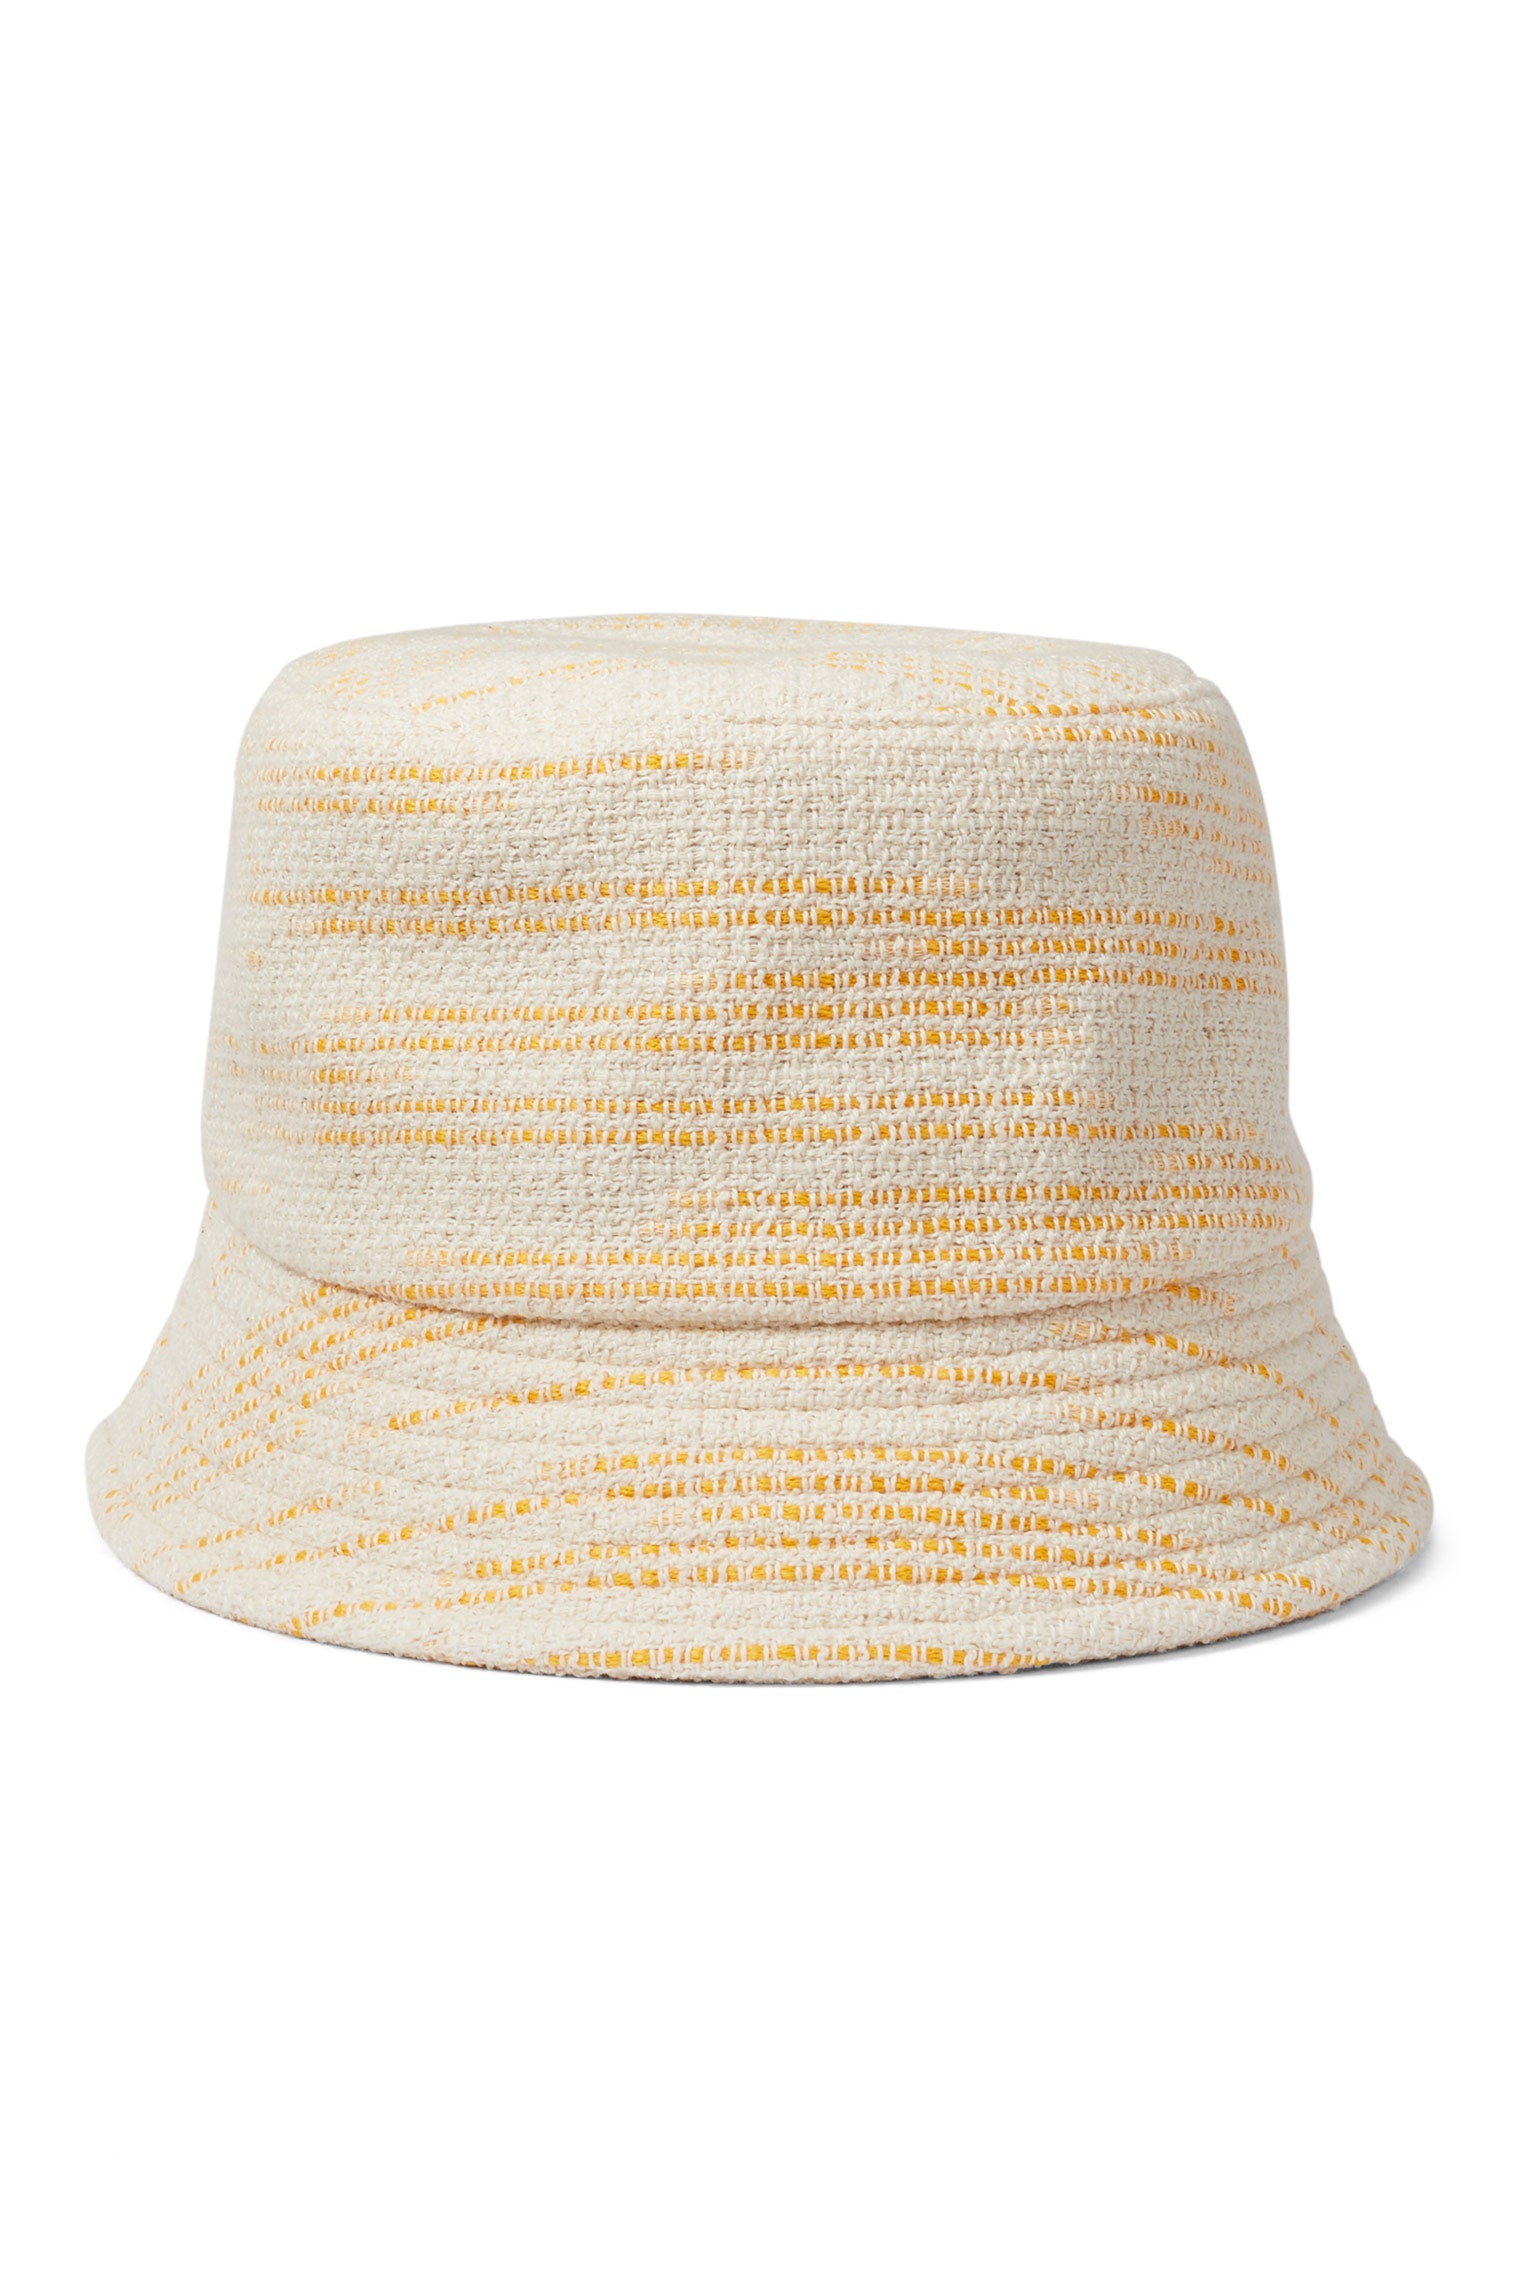 Rye Yellow Bucket Hat - New Season Women's Hats - Lock & Co. Hatters London UK